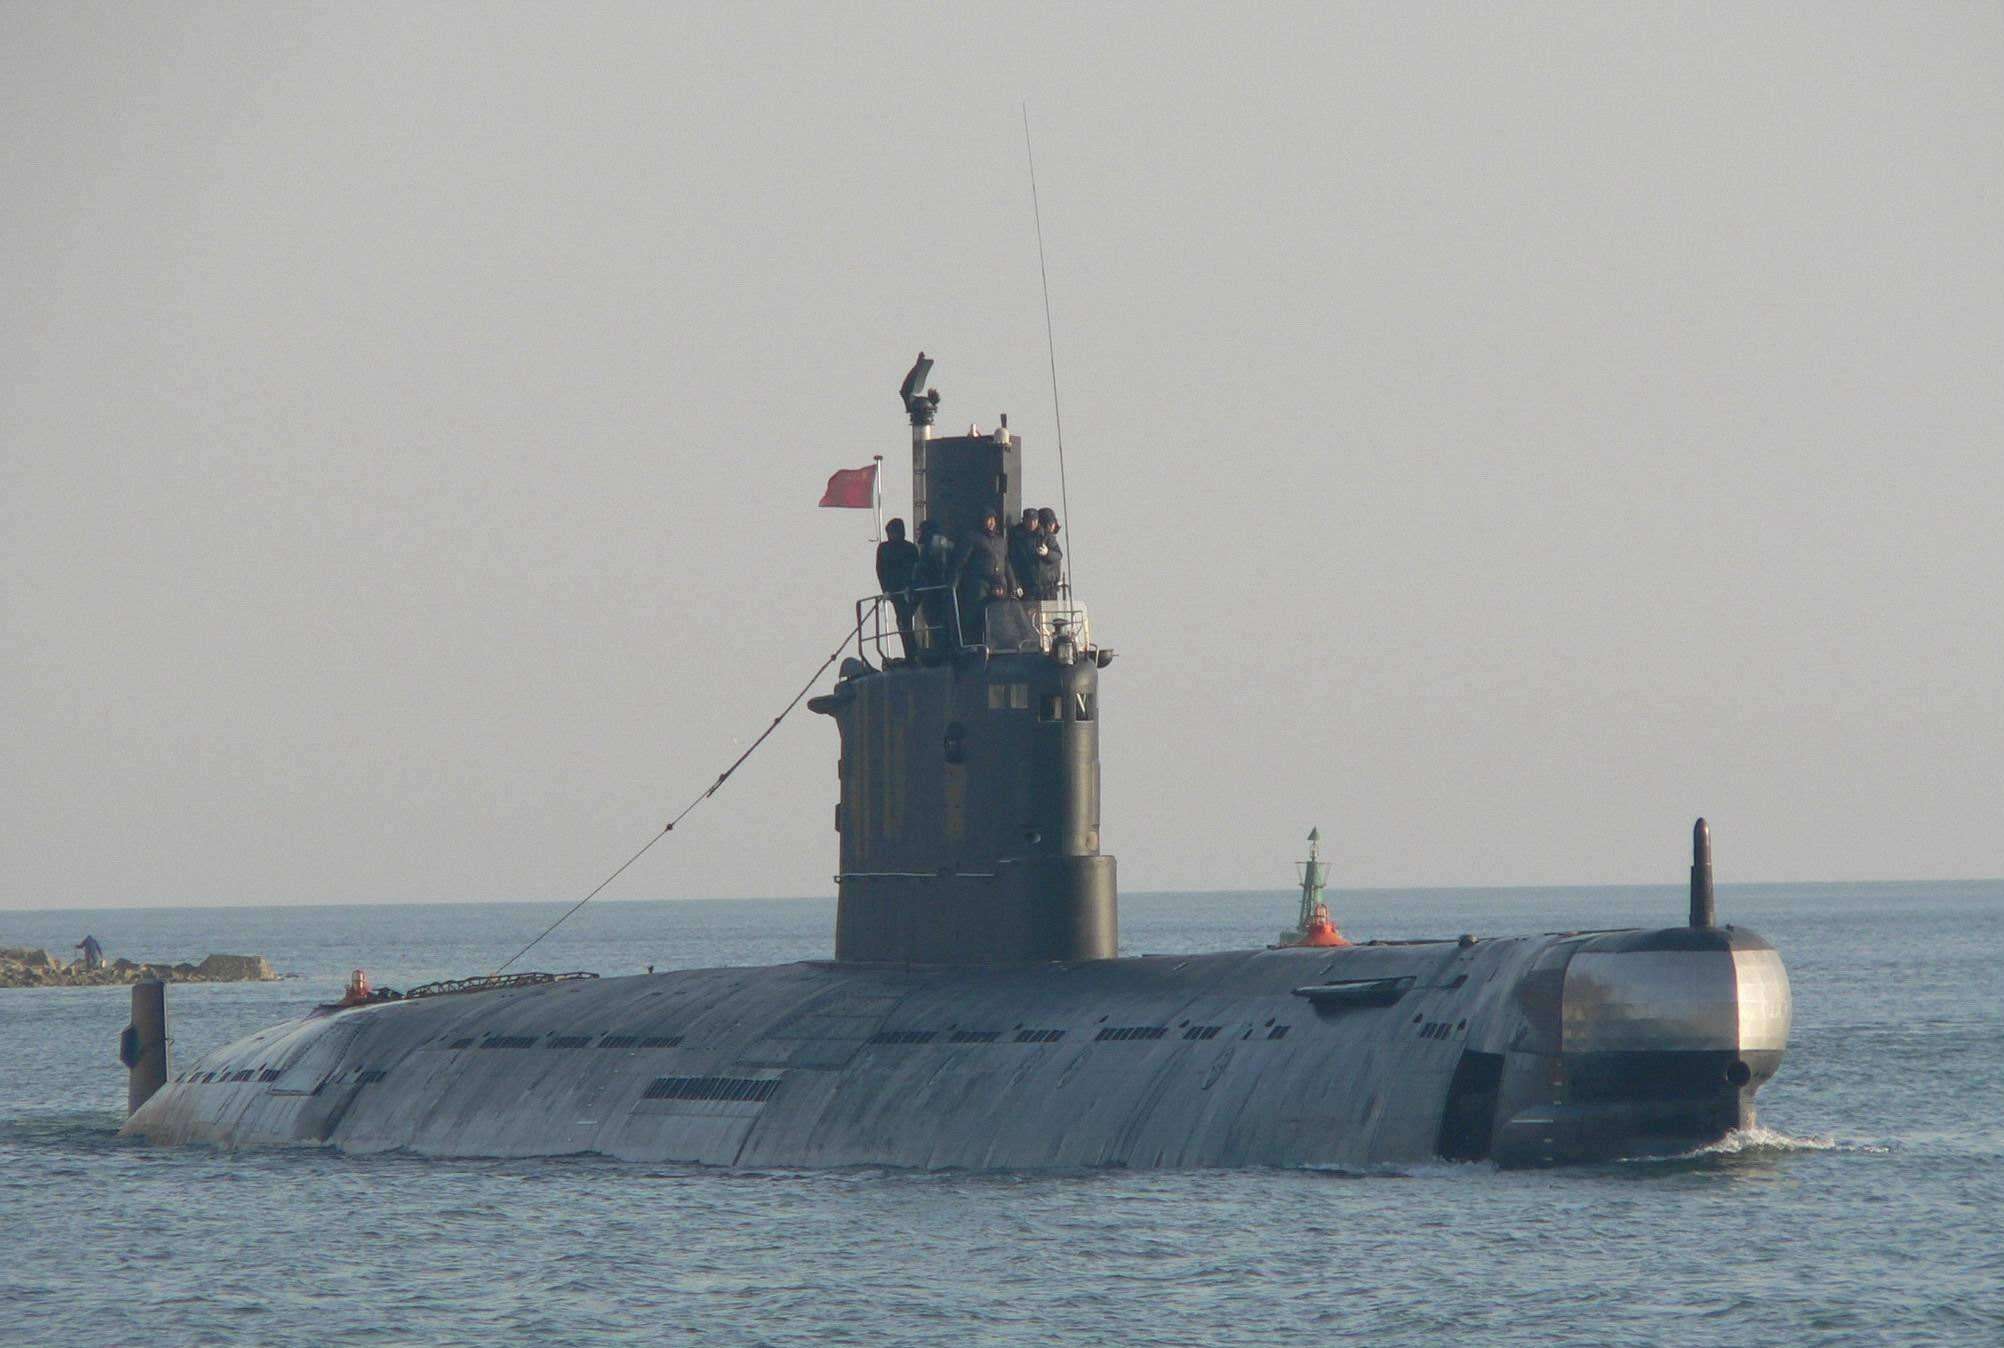 孟加拉国035G型潜艇图片